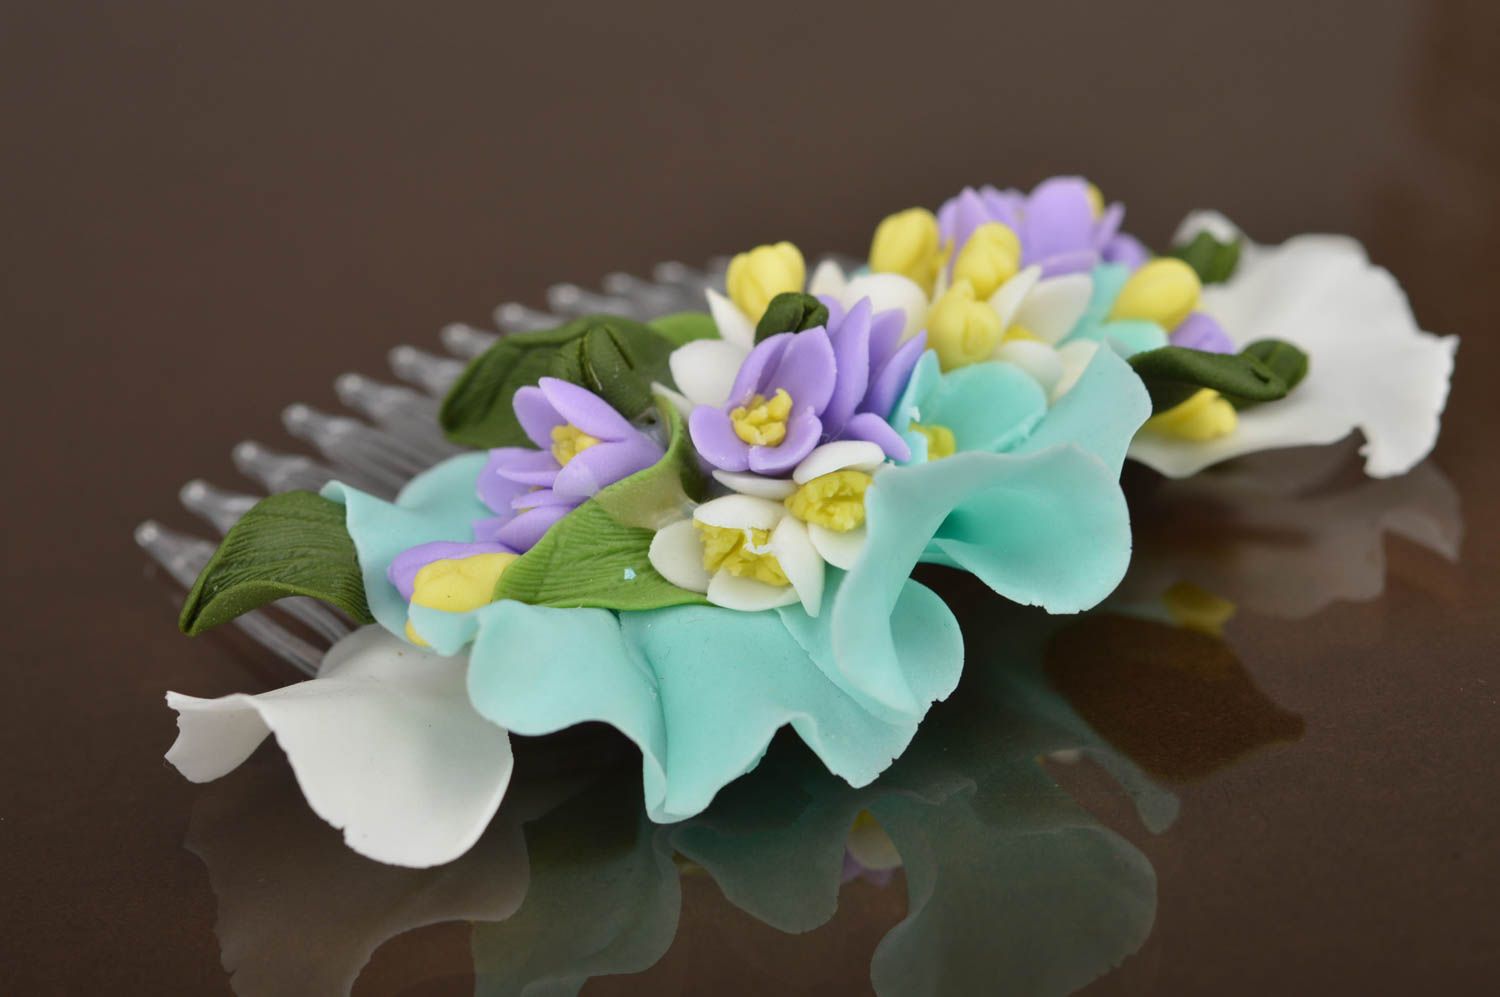 Цветы из полимерной глины — пошаговая инструкция для новичков по созданию украшений